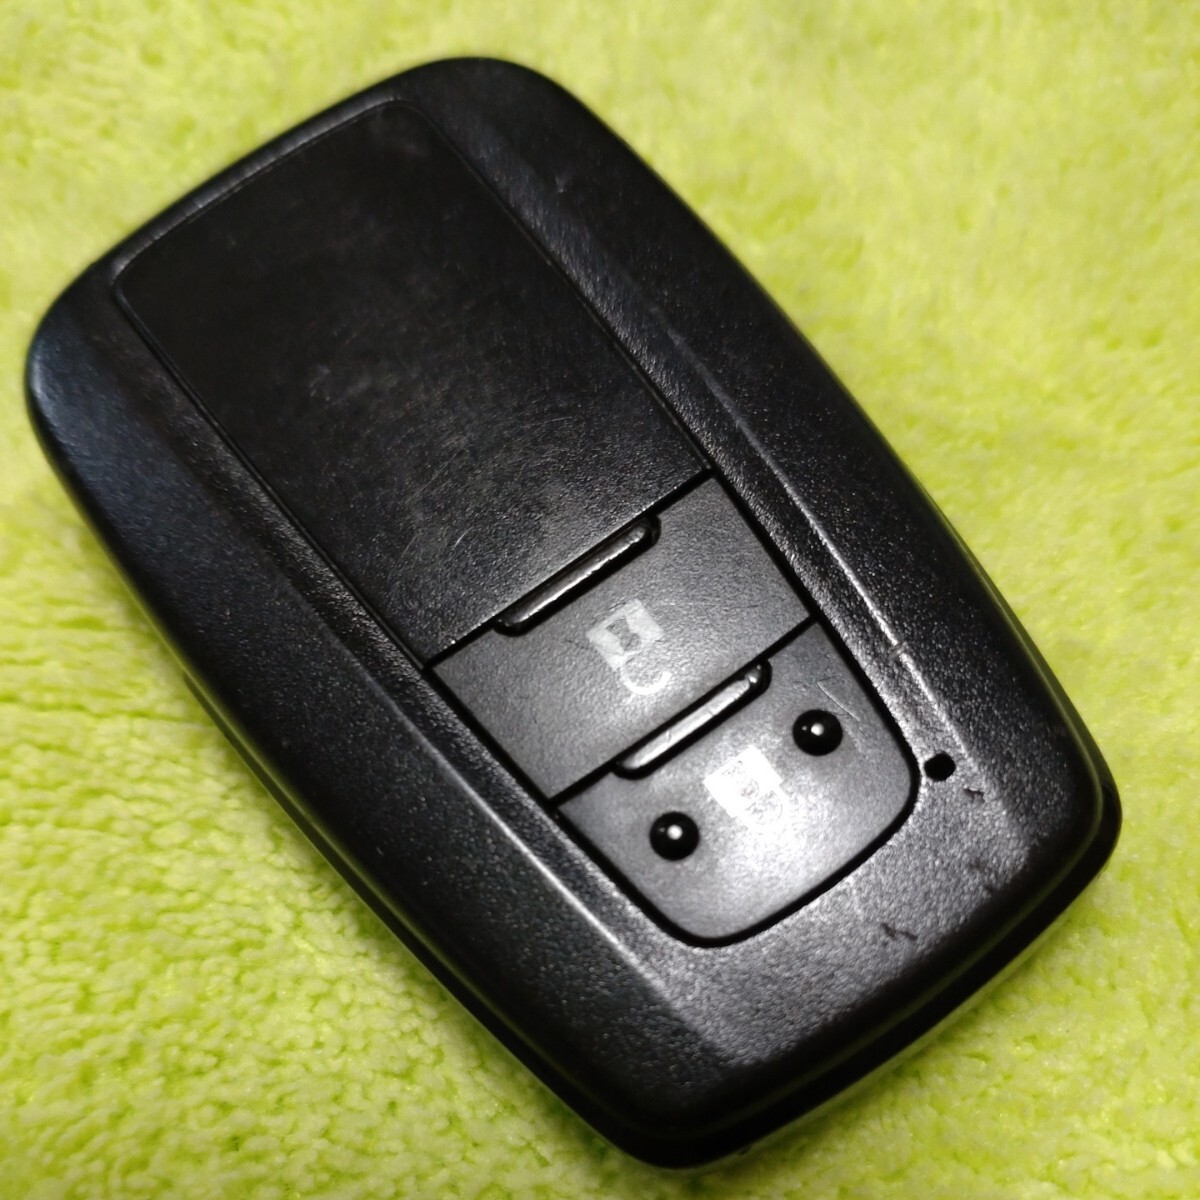 ⑥ б/у Toyota оригинальный "умный" ключ PRIUS